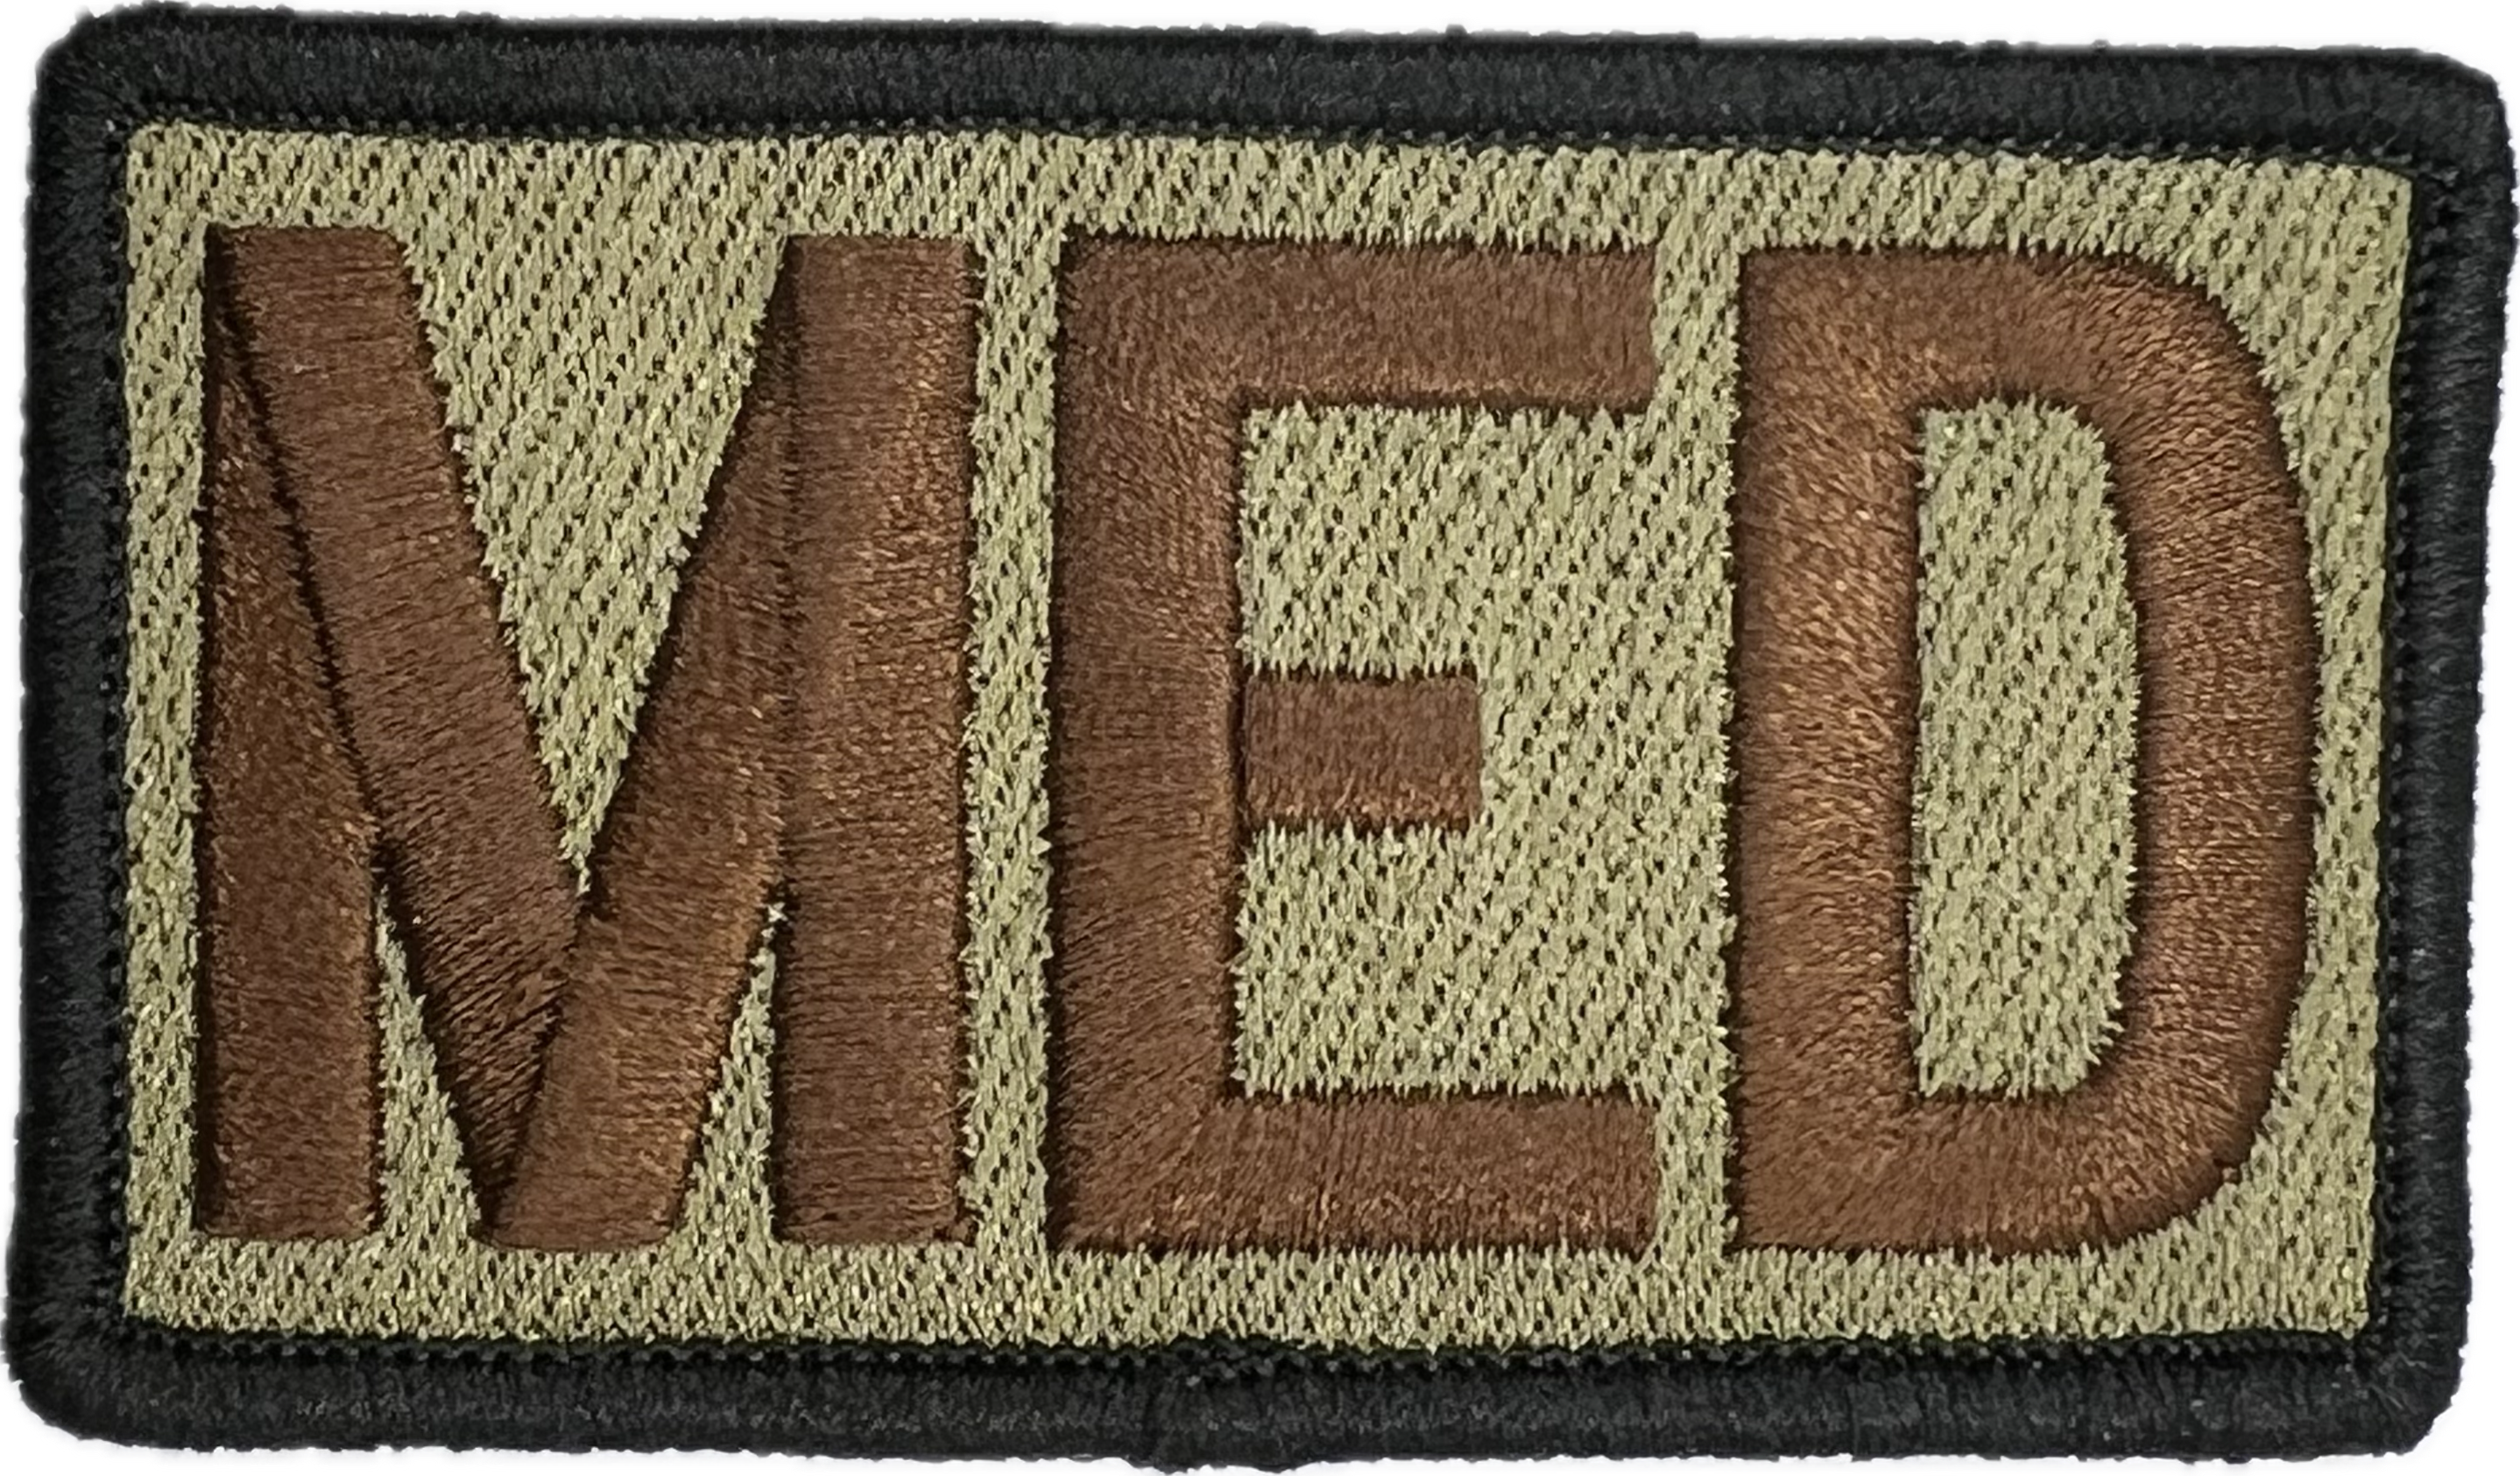 MED- Duty Identifier Patch (w/ Black border)